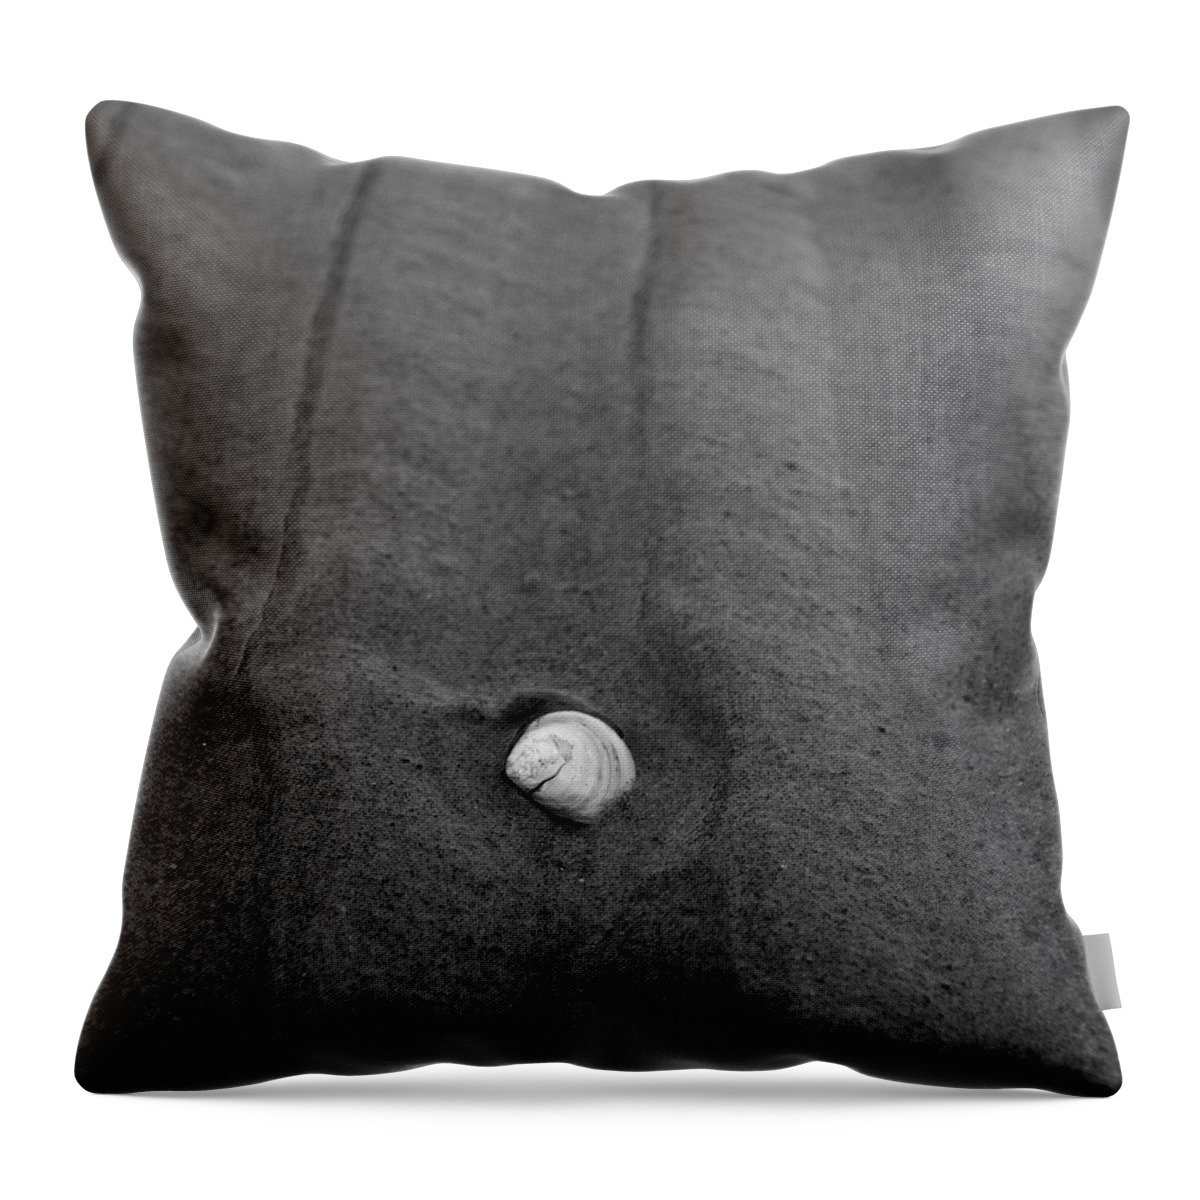 Lehtokukka Throw Pillow featuring the photograph Sandlines by Jouko Lehto